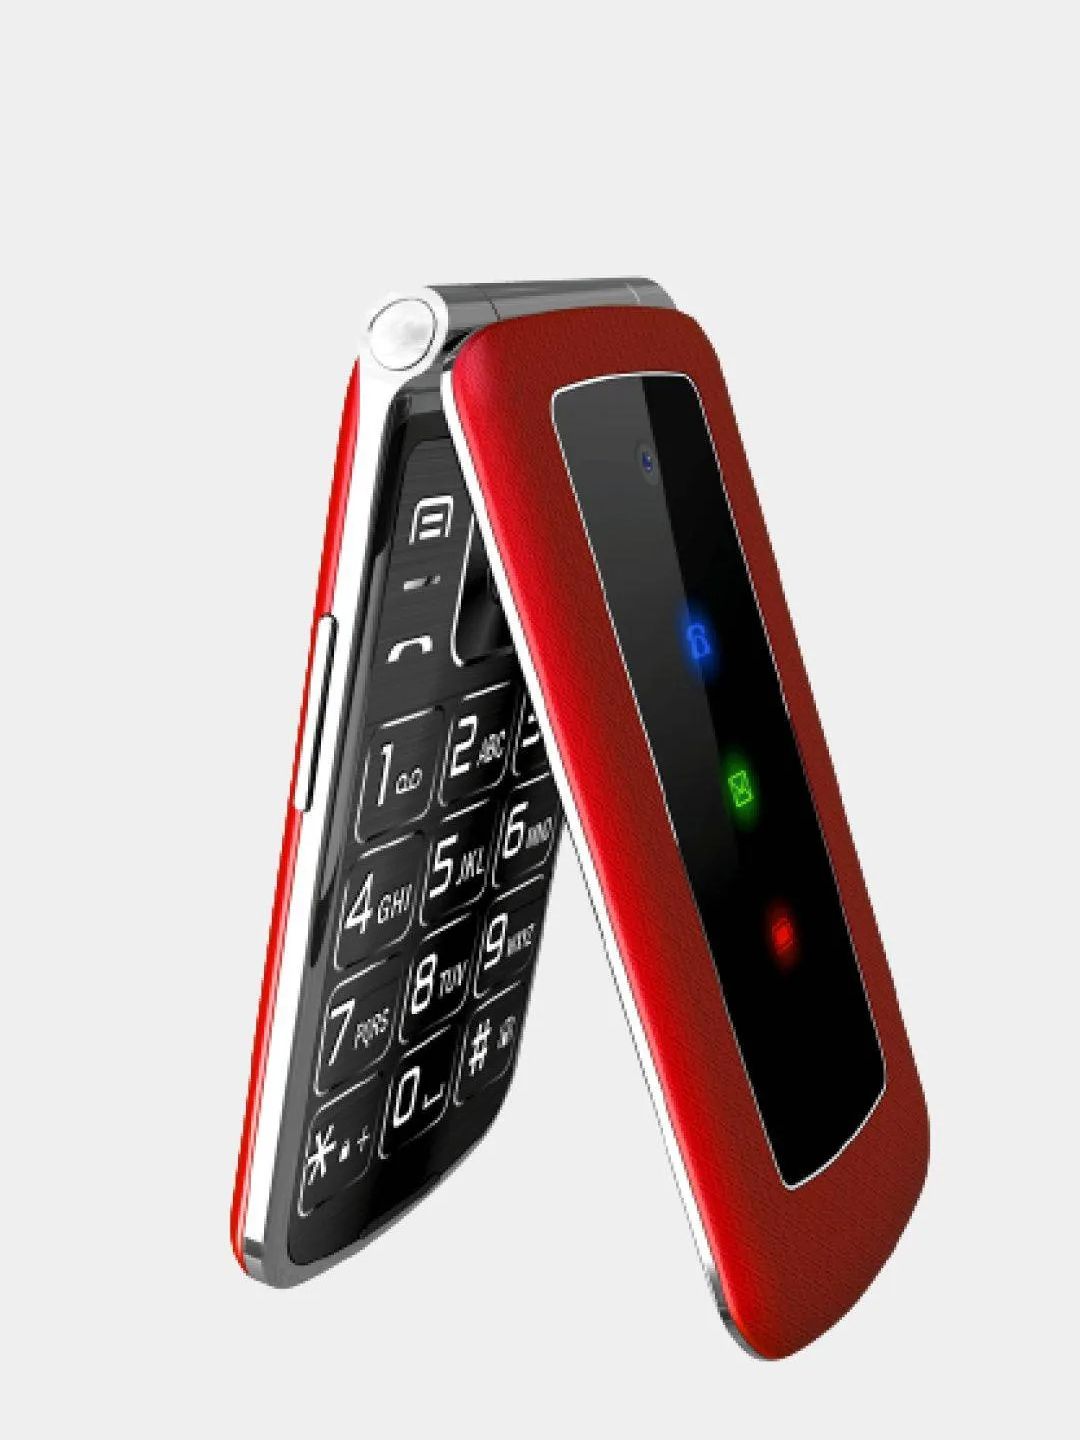 Телефон раскладушка без. Мобильный телефон Olmio f28 (черный). Телефон Olmio f28 (Red). Сотовый телефон Olmio f28 Red. Мобильный телефон Olmio f28 красный.